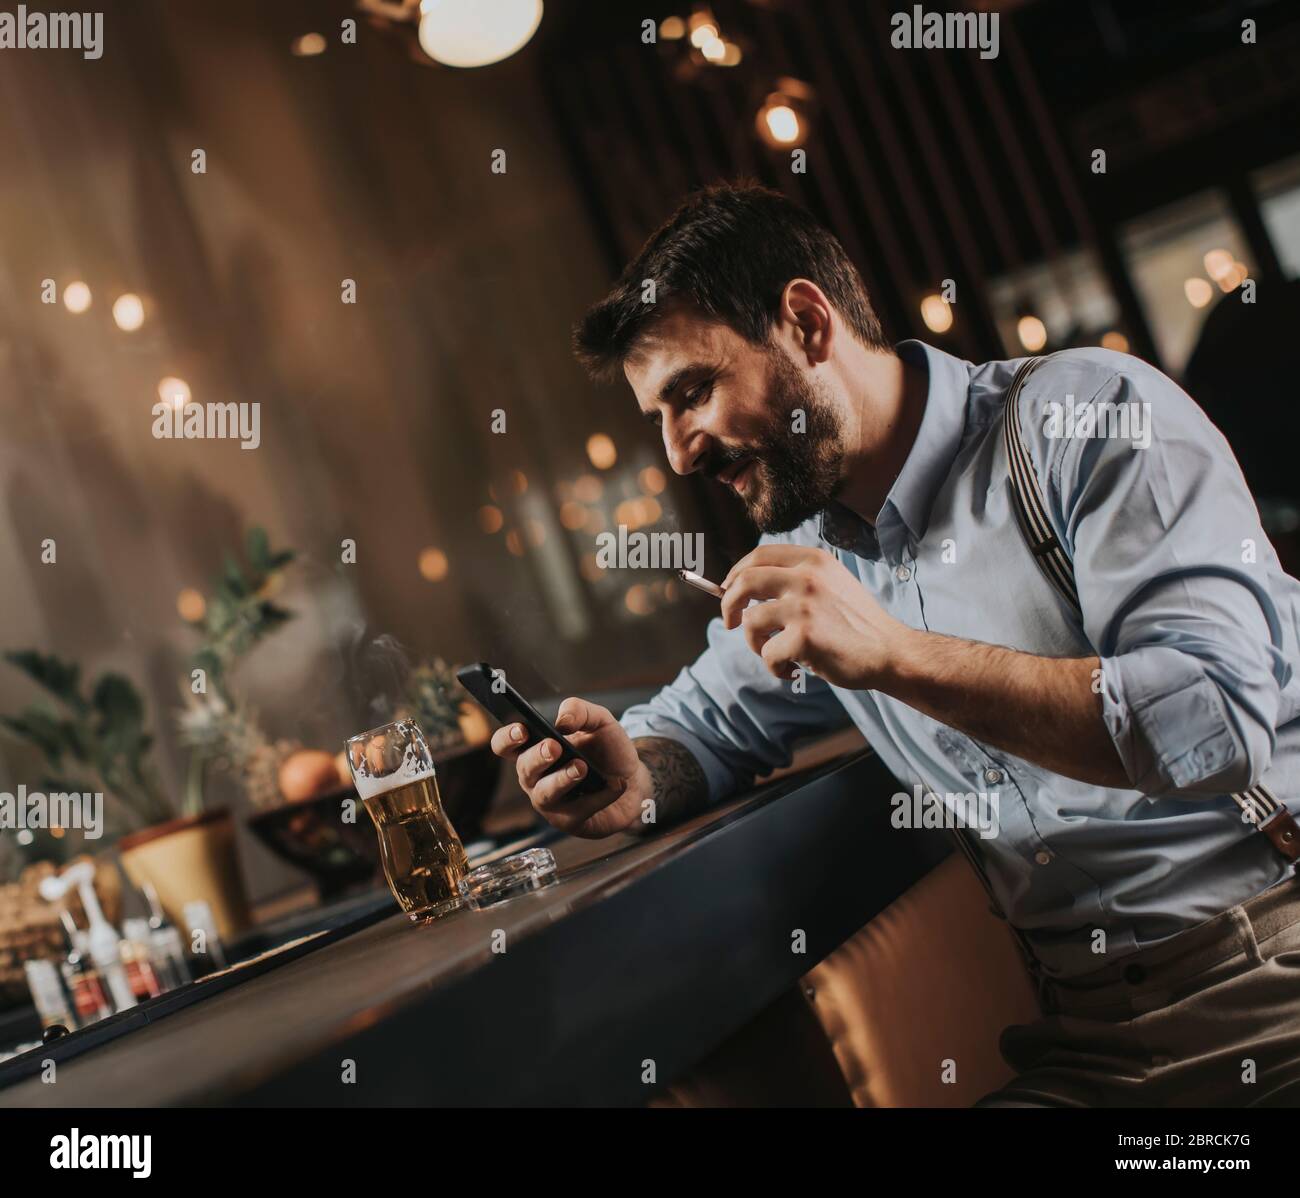 Un jeune homme boit de la bière et fume de la cigarette au pub Banque D'Images